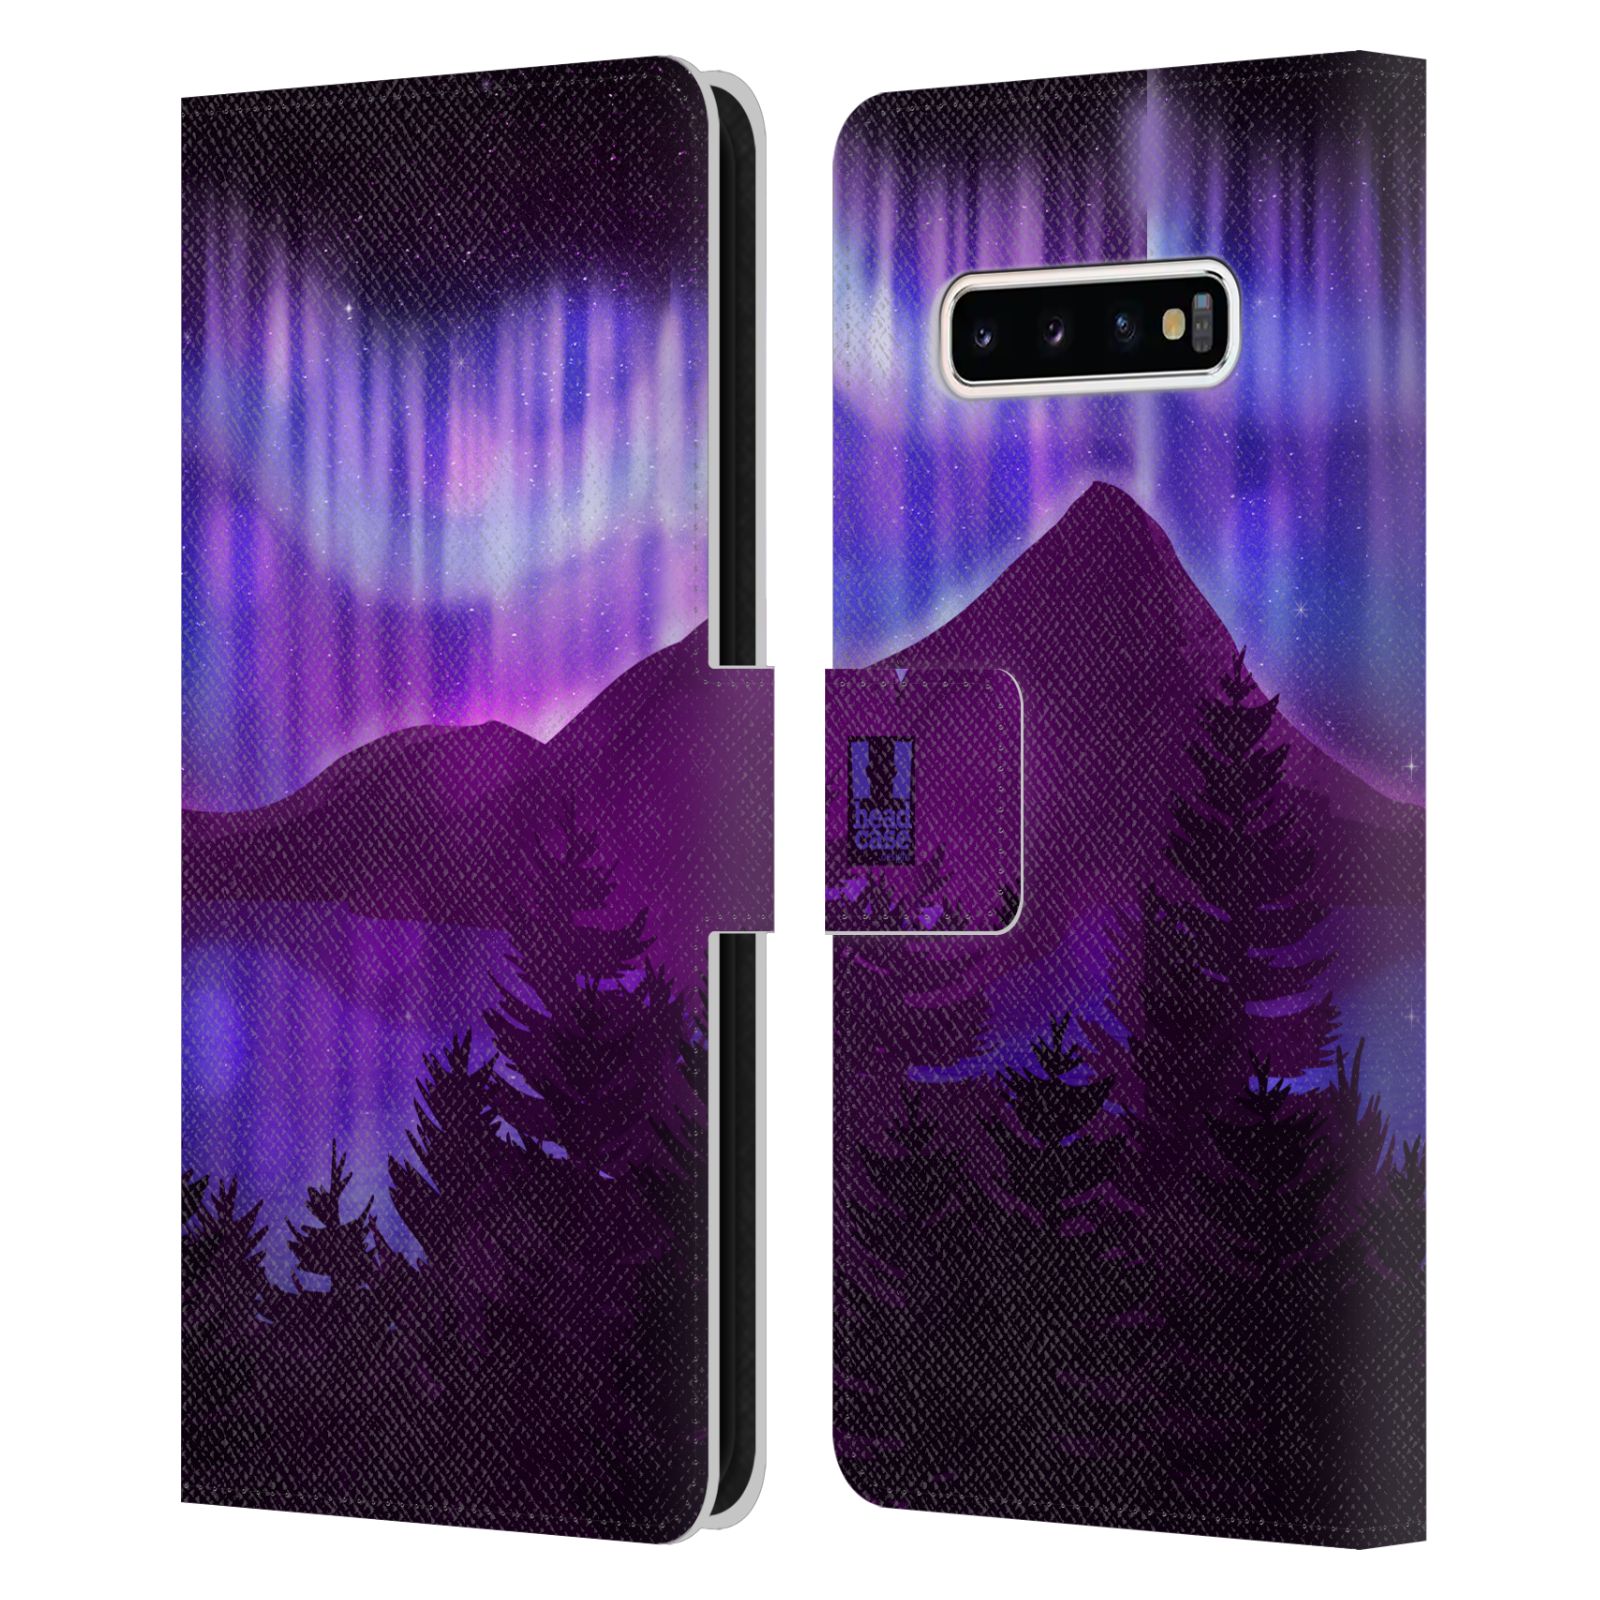 Pouzdro na mobil Samsung Galaxy S10+ - HEAD CASE - Hory a lesy fialový odstín